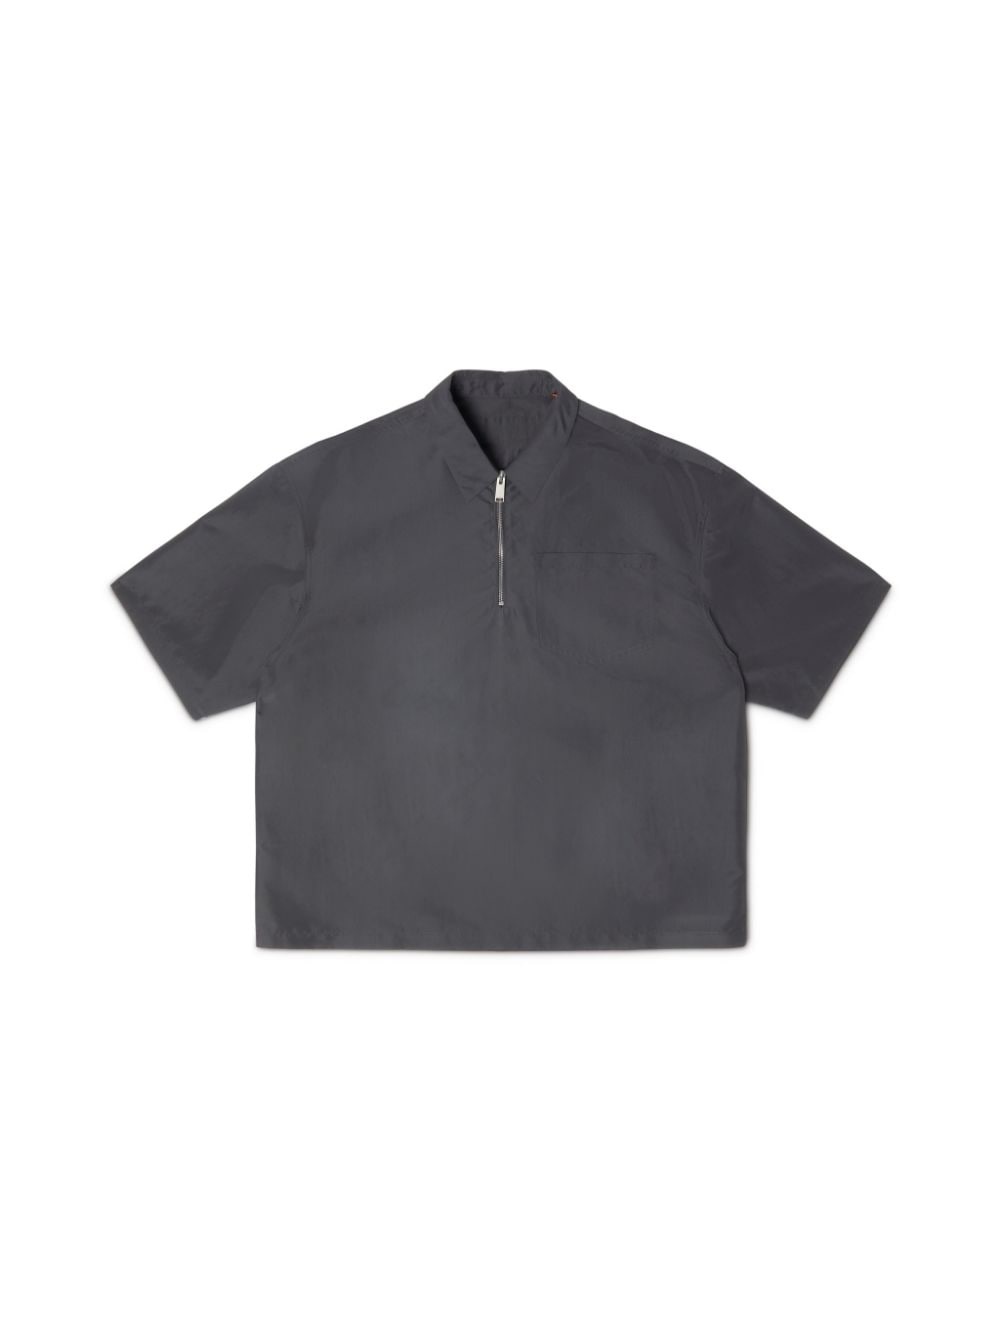 Ex-Ray Nylon Zip Ss Shirt - 1